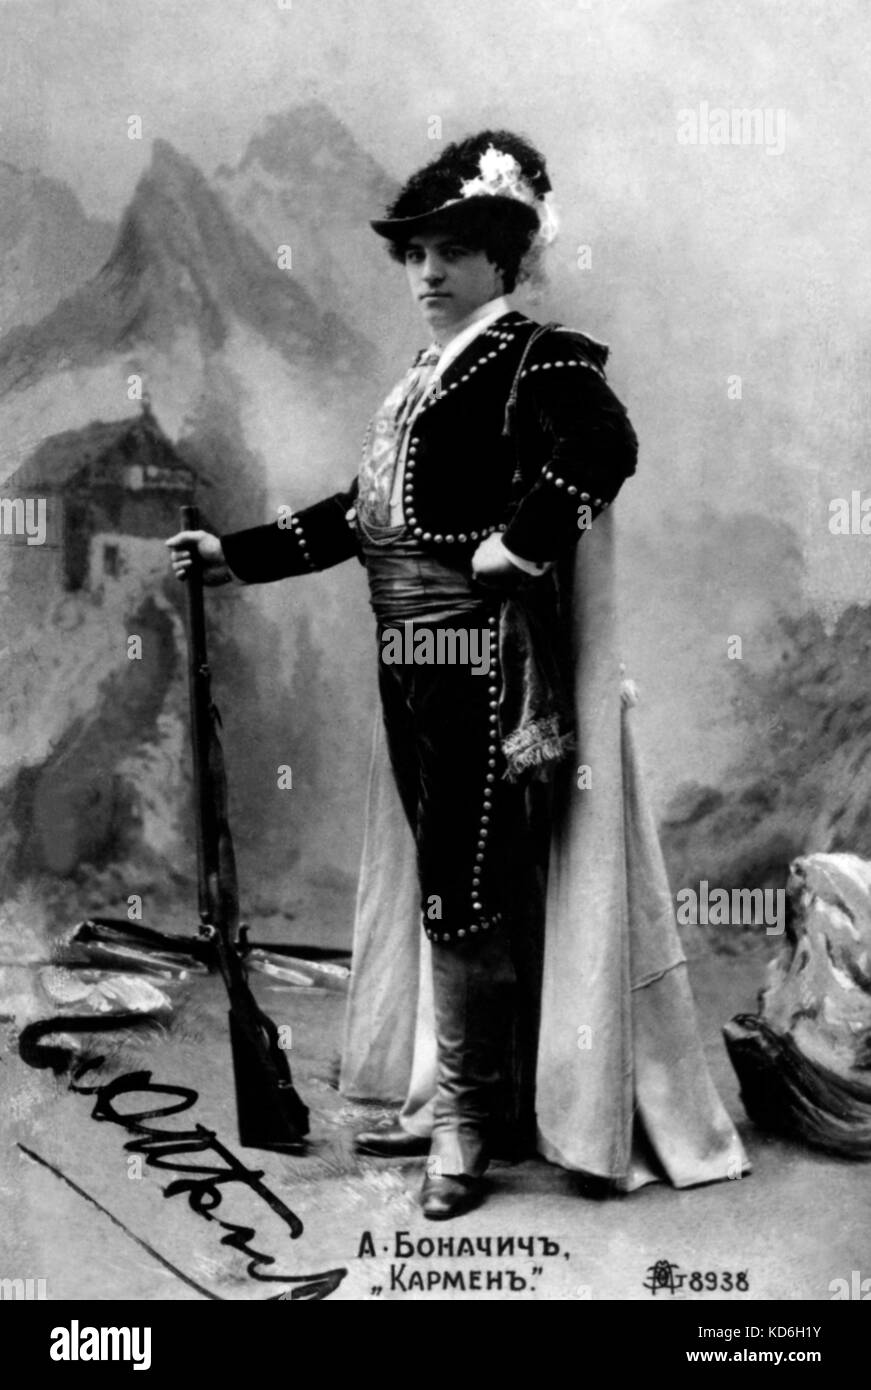 BIZET. G. - CARMEN - BONACHICH as Escamillo the toreador. French composer, 1838-1875 Stock Photo